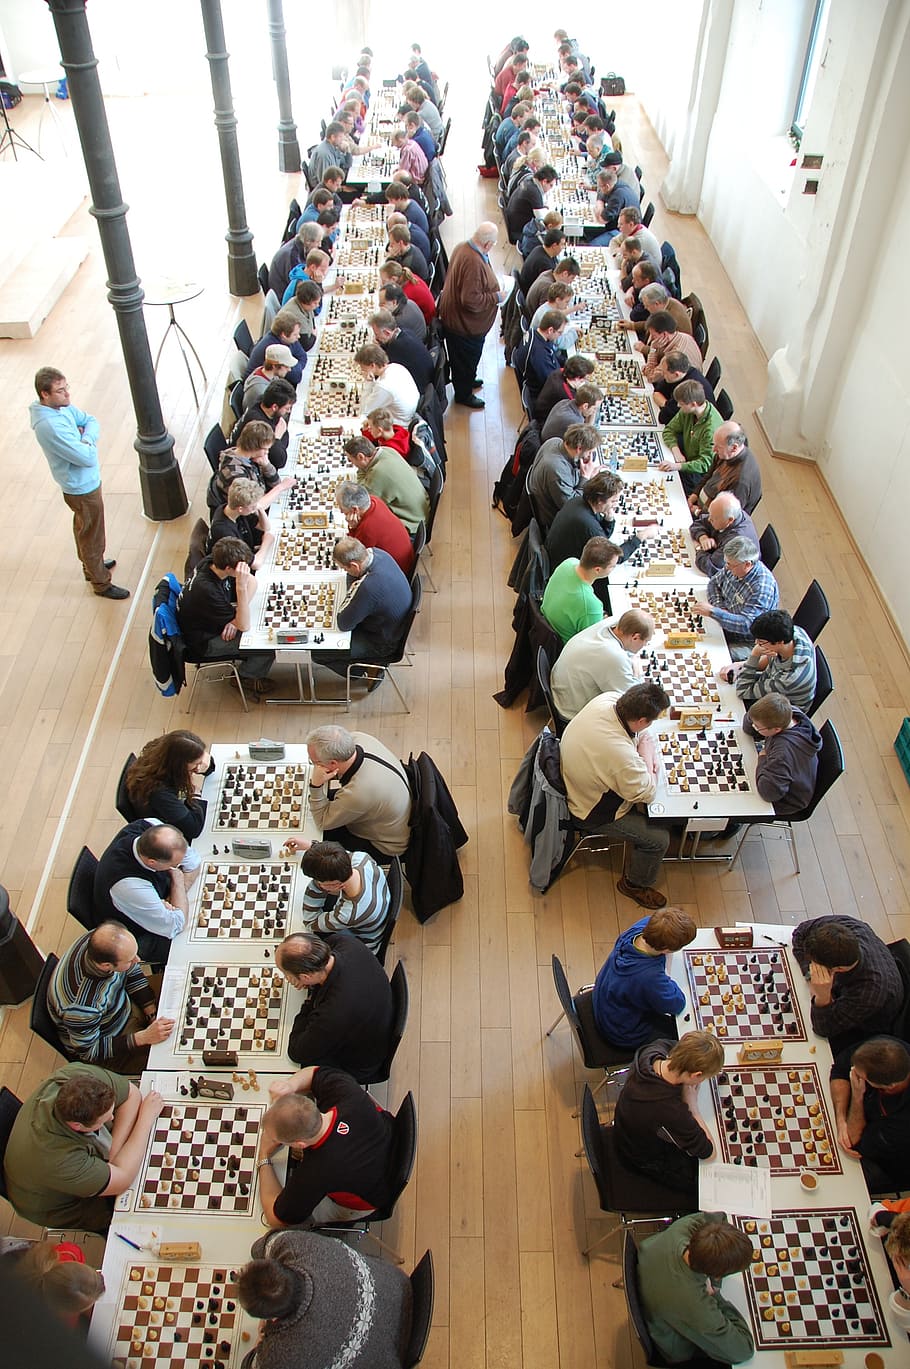 ajedrez, torneo, congreso de ajedrez, jugadores, tablero de ajedrez, personas, interiores, Grupo de personas, vista de ángulo alto, personas reales